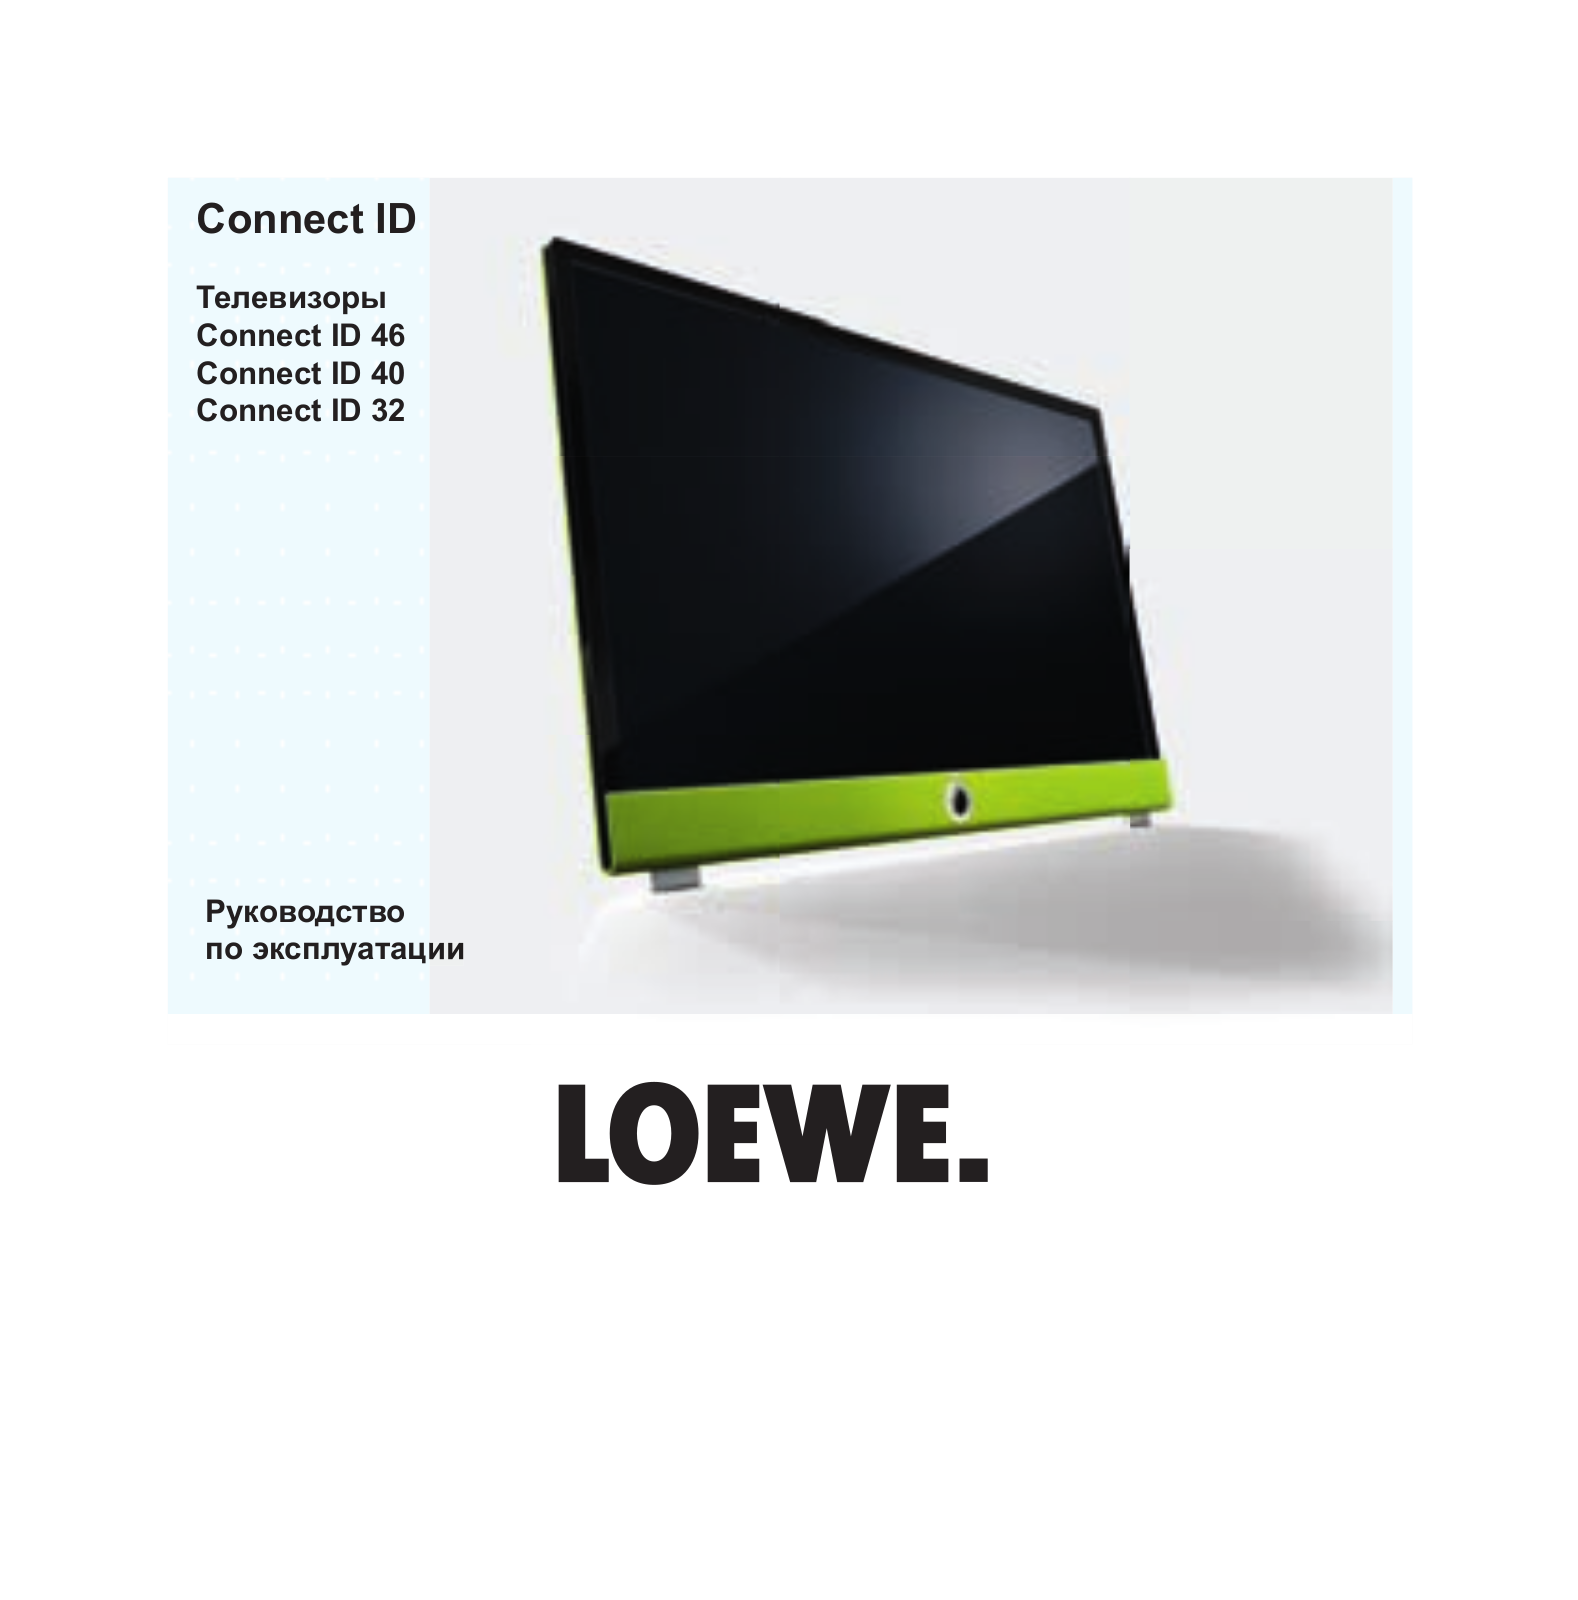 Loewe Connect ID 46, Connect ID 40, Connect ID 32 User Manual